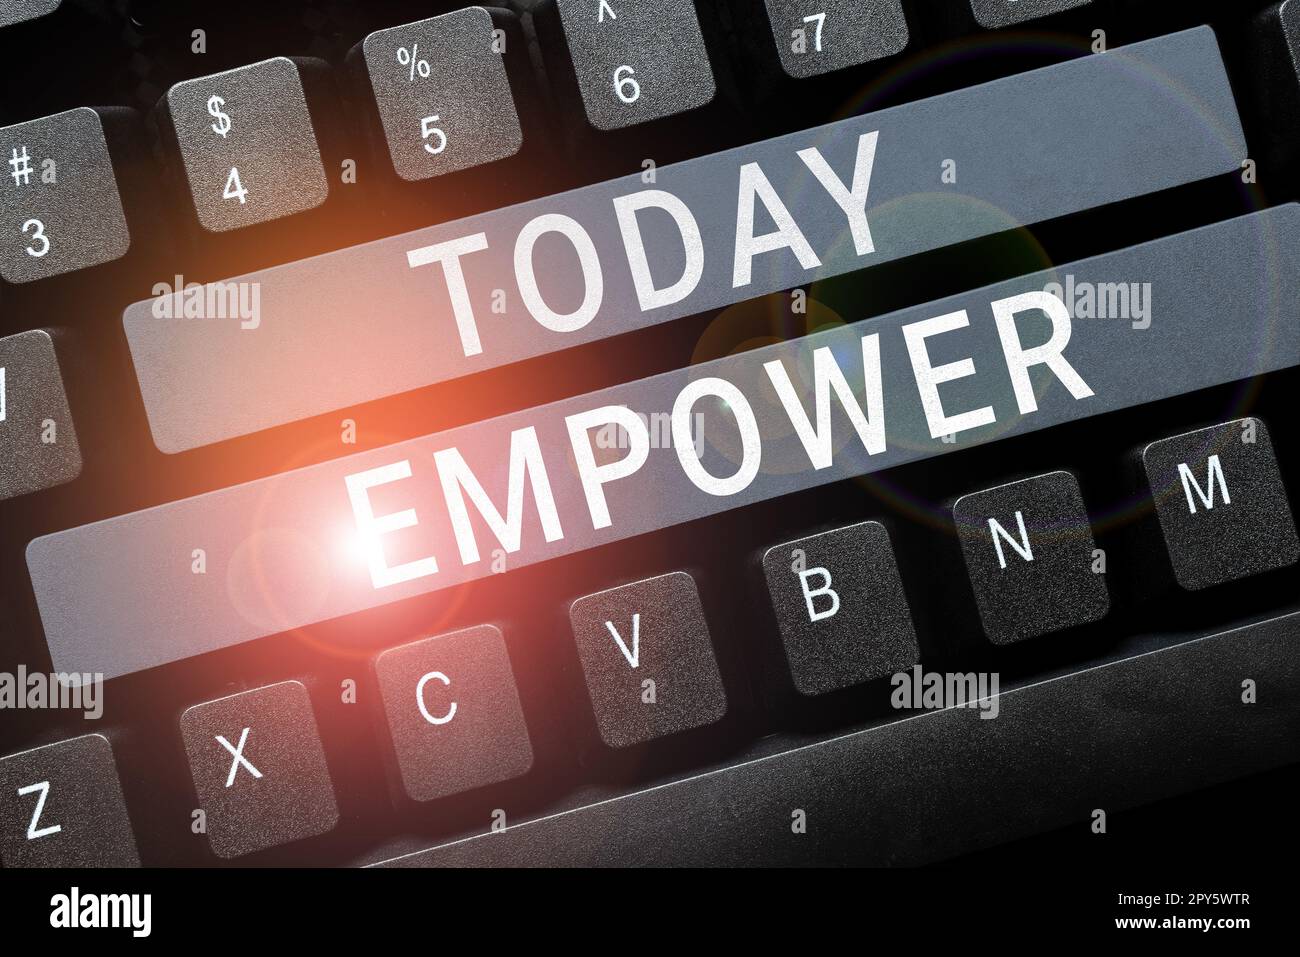 Konzeptionelle Darstellung Empower. Internet-Konzept, um Macht oder Autorität zu geben, um insbesondere durch rechtliche zu autorisieren Stockfoto